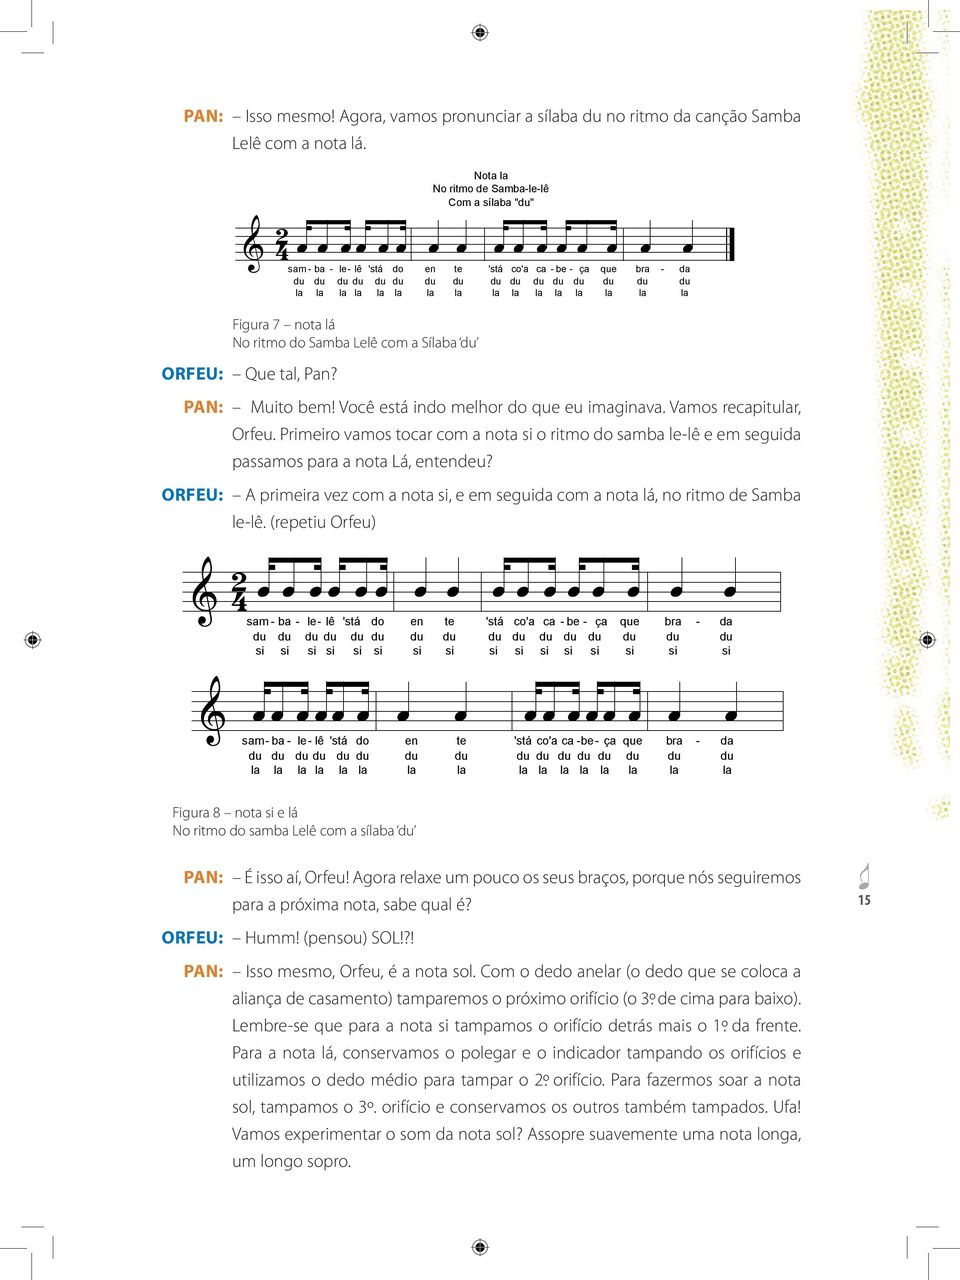 orfeu: A primeira vez com a nota si, e em seguida com a nota lá, no ritmo de Samba le-lê. (repetiu Orfeu) Figura 8 nota si e lá No ritmo do samba Lelê com a sílaba du pan: É isso aí, Orfeu!